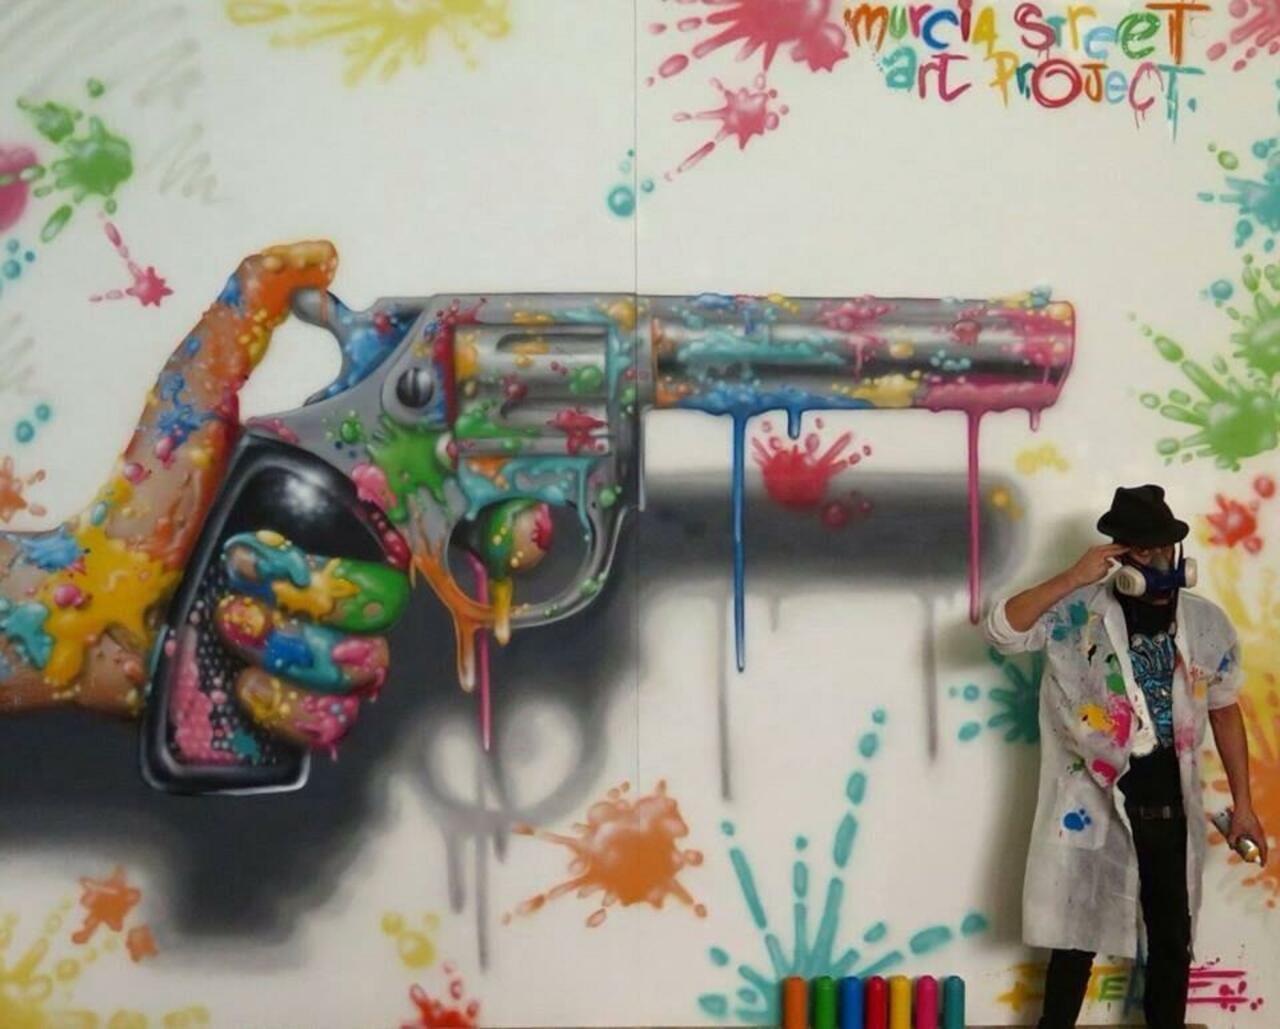 'Make Art Not War'  Artist Jeaze Oner new Street Art wall located Molina, Spain

#art #graffiti #streetart http://t.co/DYoykk23Aq